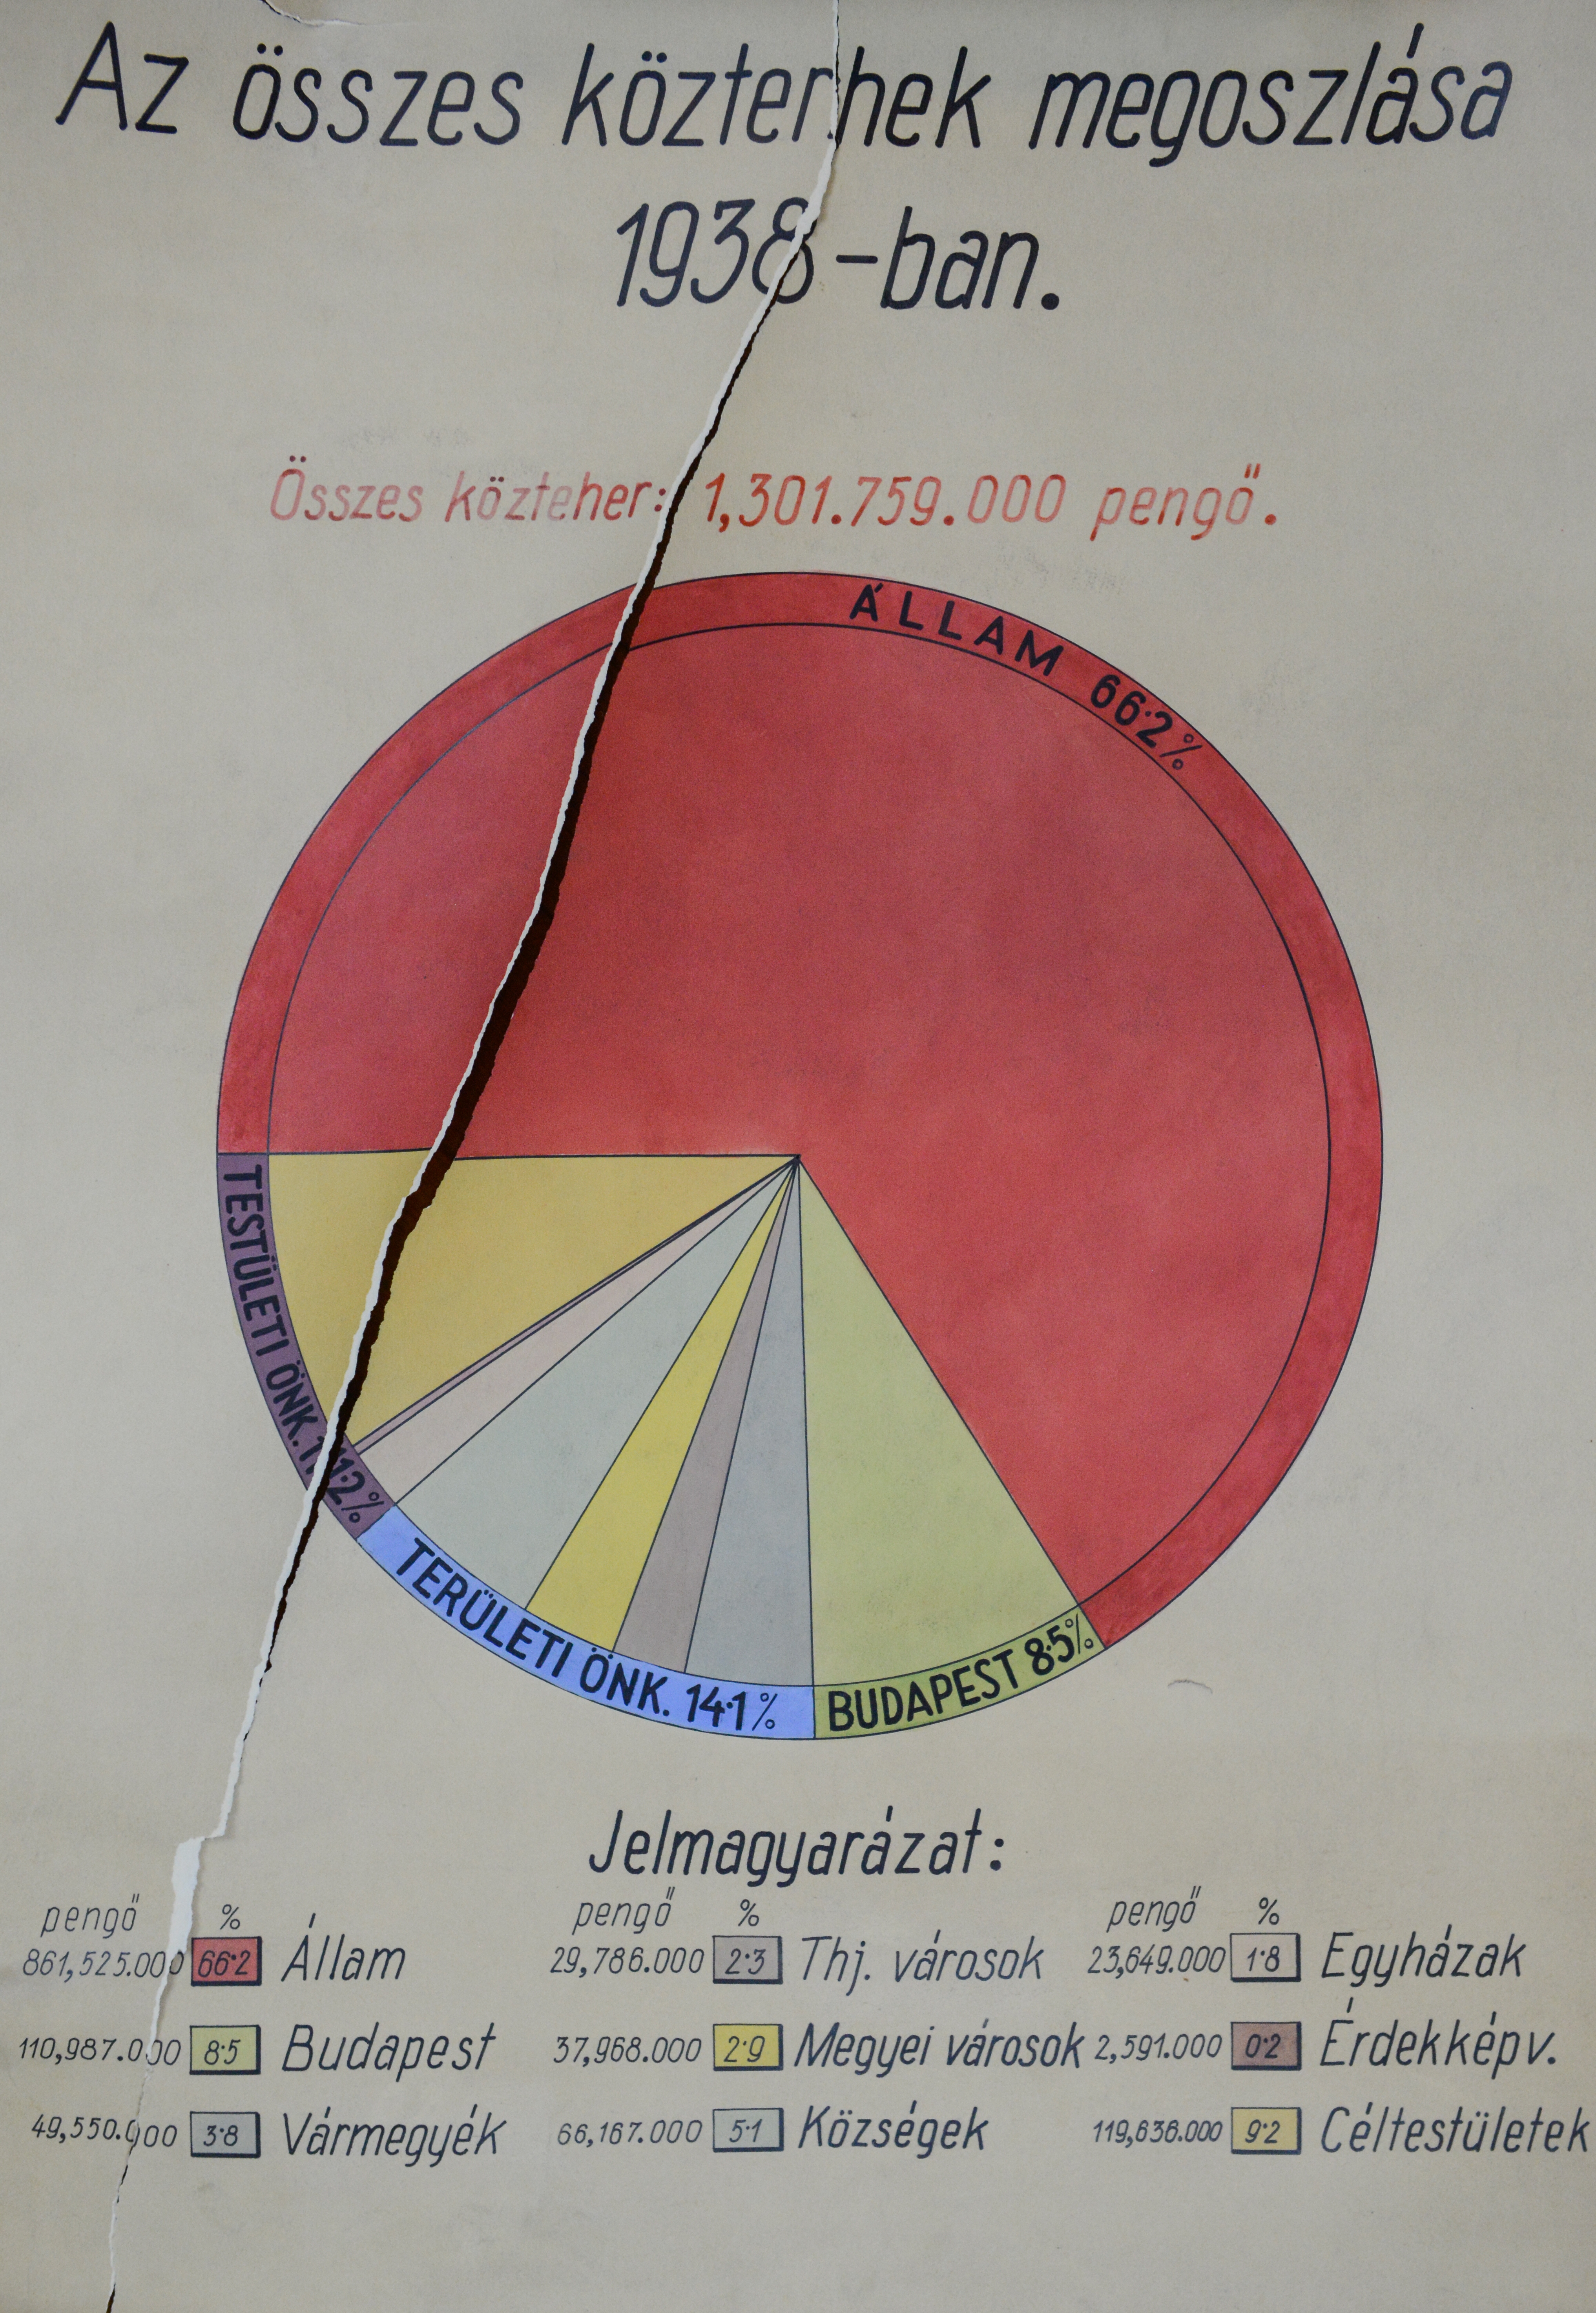 Az összes közterhek megoszlása 1938-ban